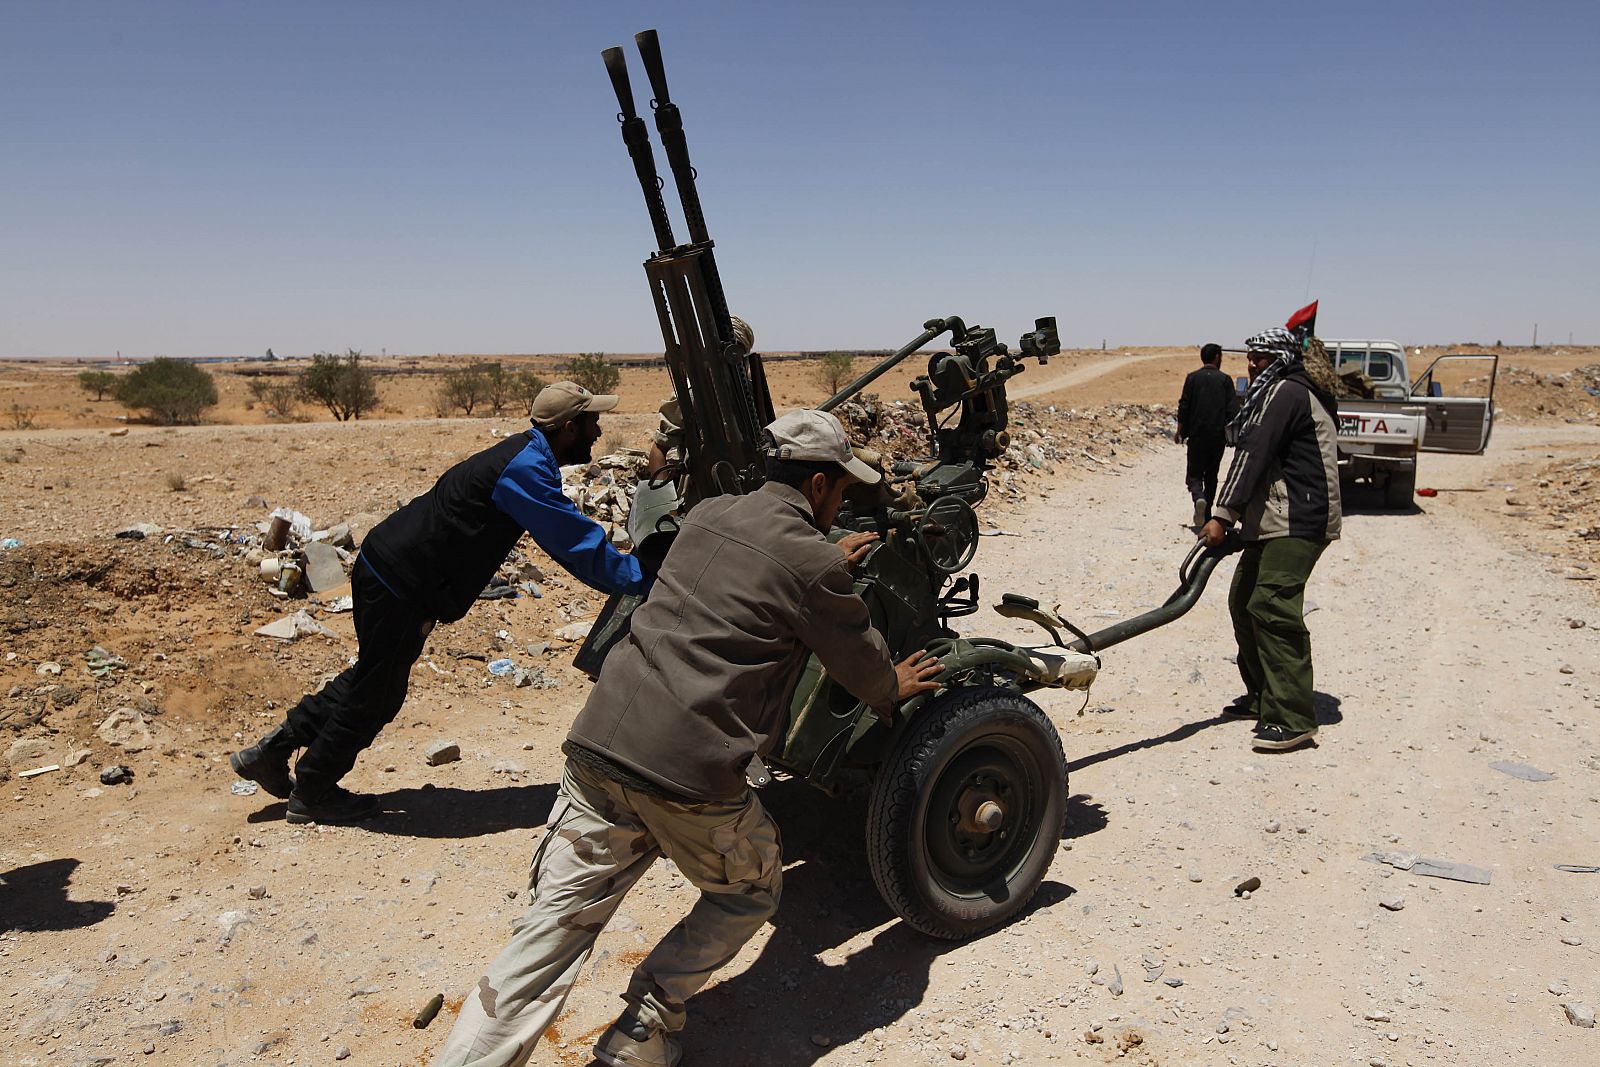 Rebeldes libios al sureste de Zintan haciéndose con armamento abandonado por las fuerzas de Gadafi